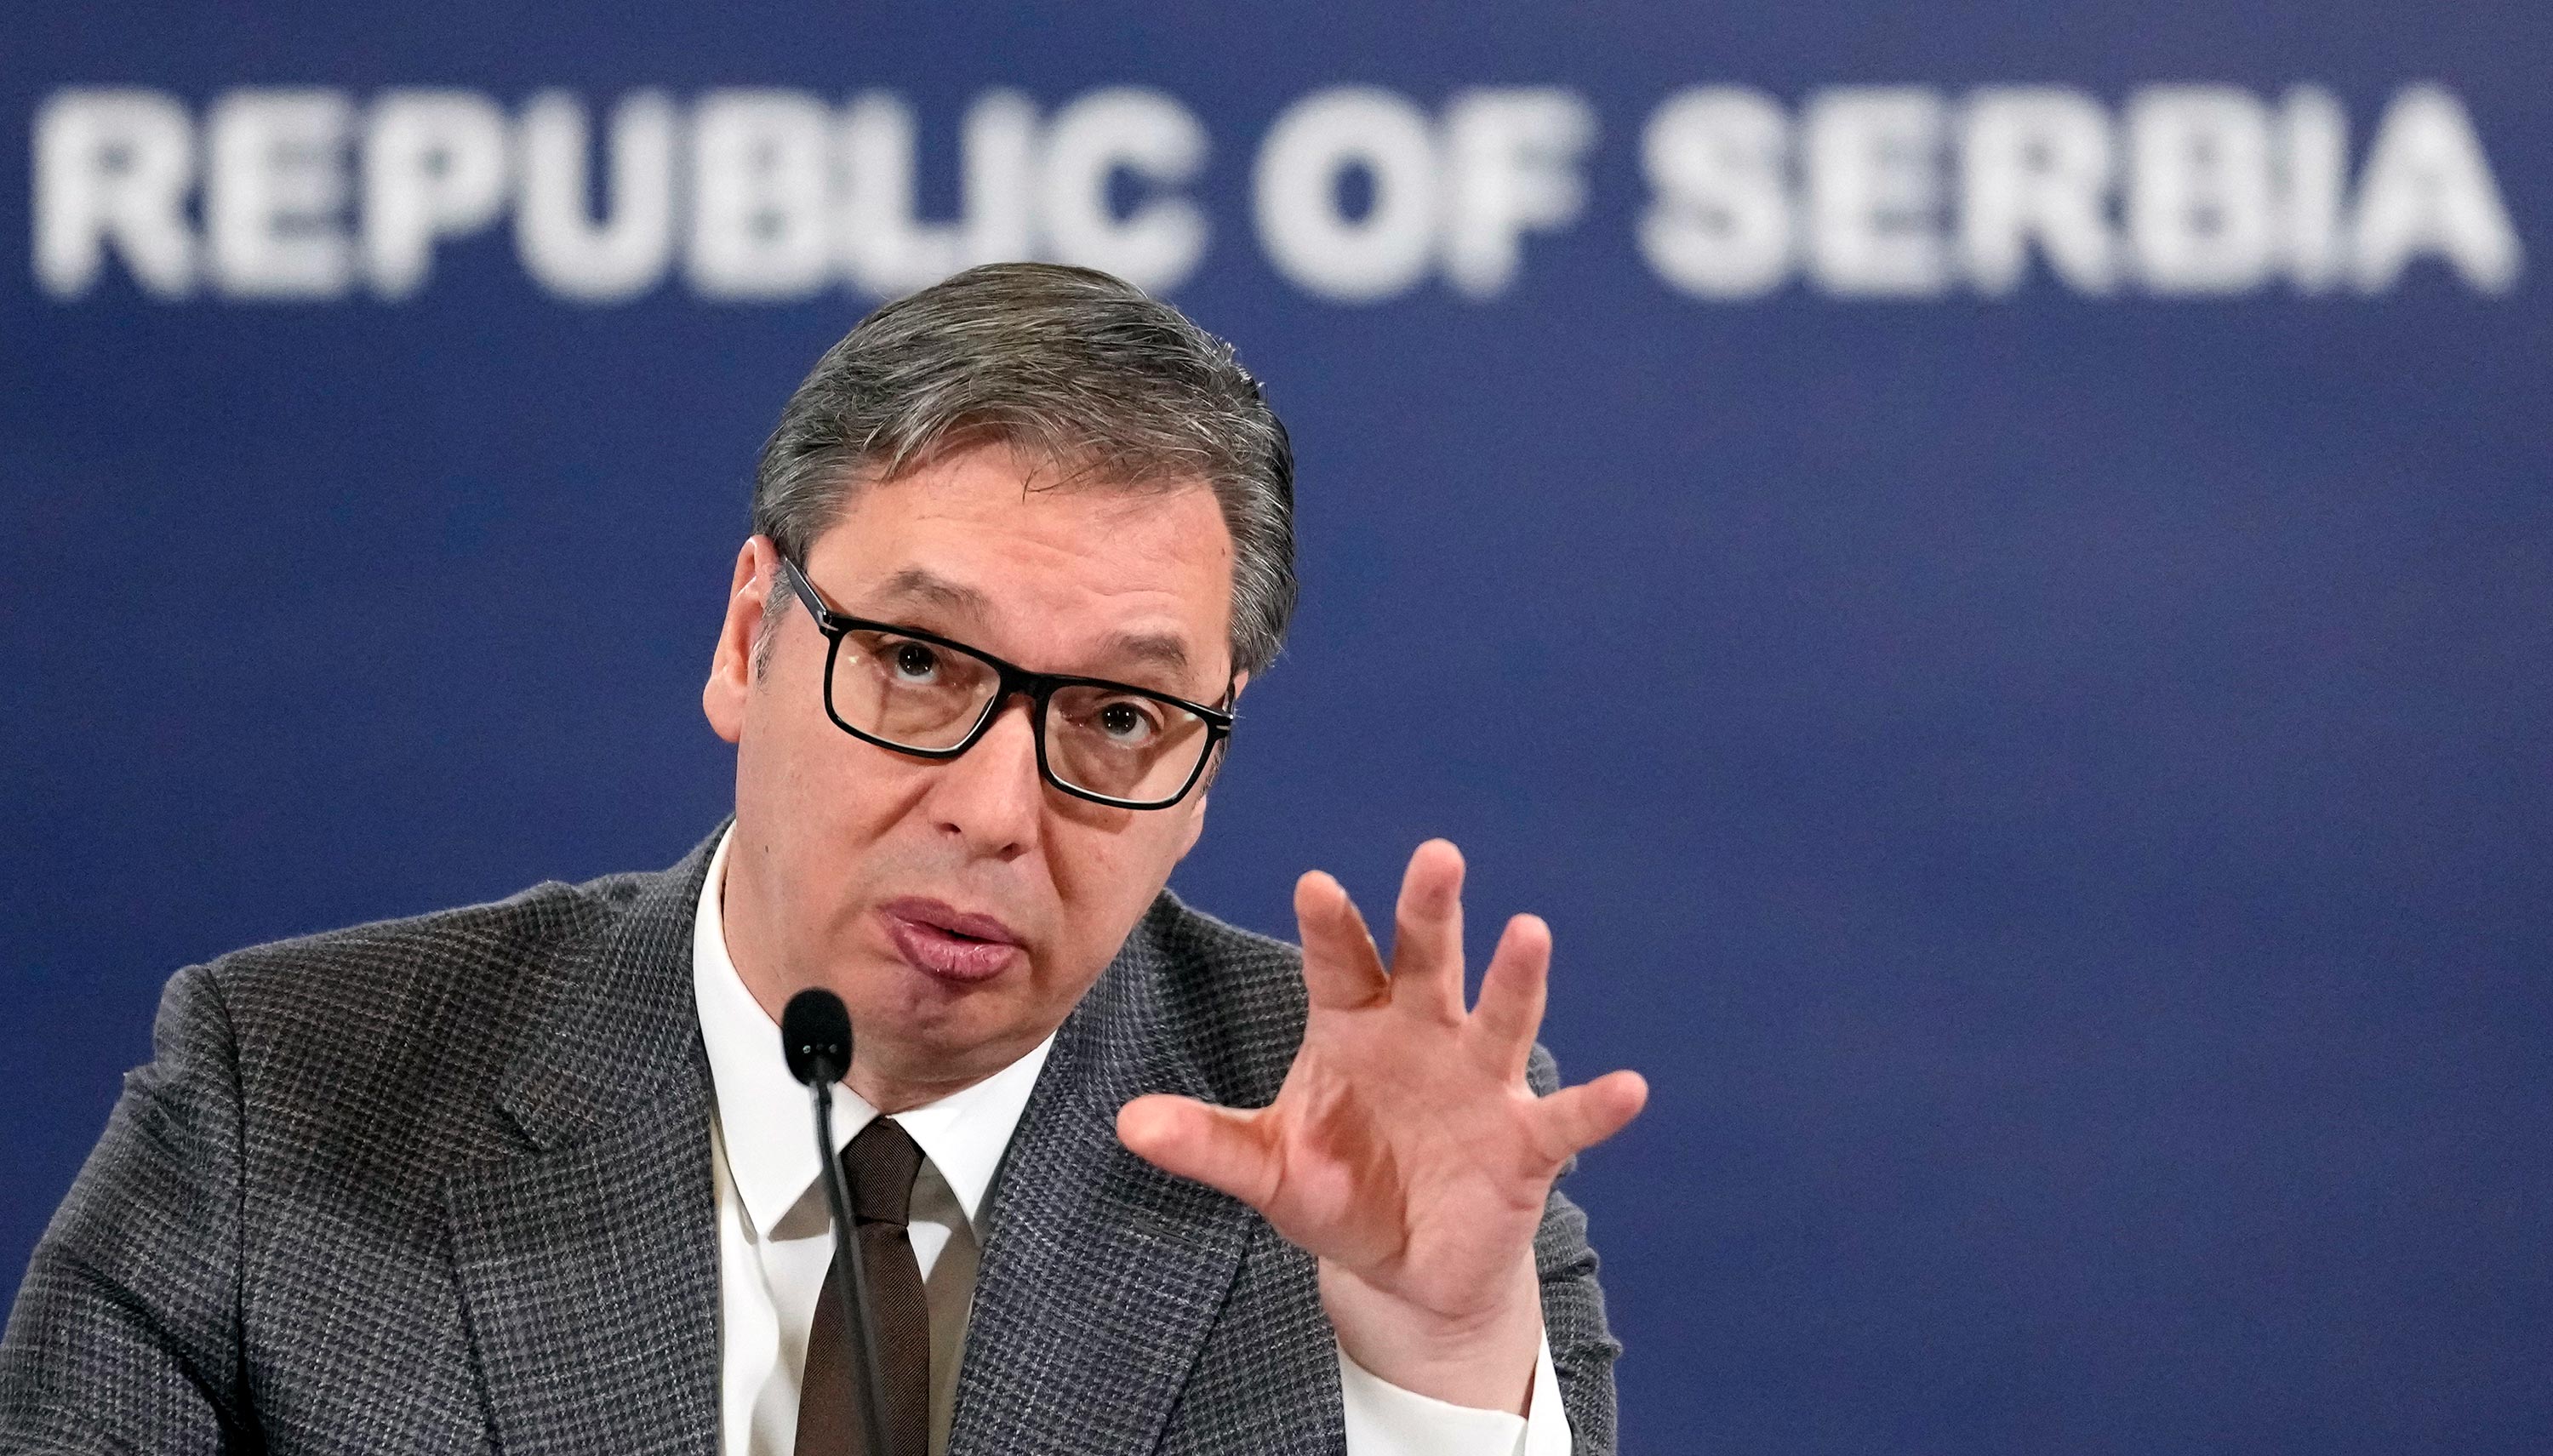 Srbija u vrijeme globalnih promjena: Može li Beograd zadržati neutralnost? Vučić tvrdi da je Srbija dobila ultimatum od "moćnih zapadnih zemalja"